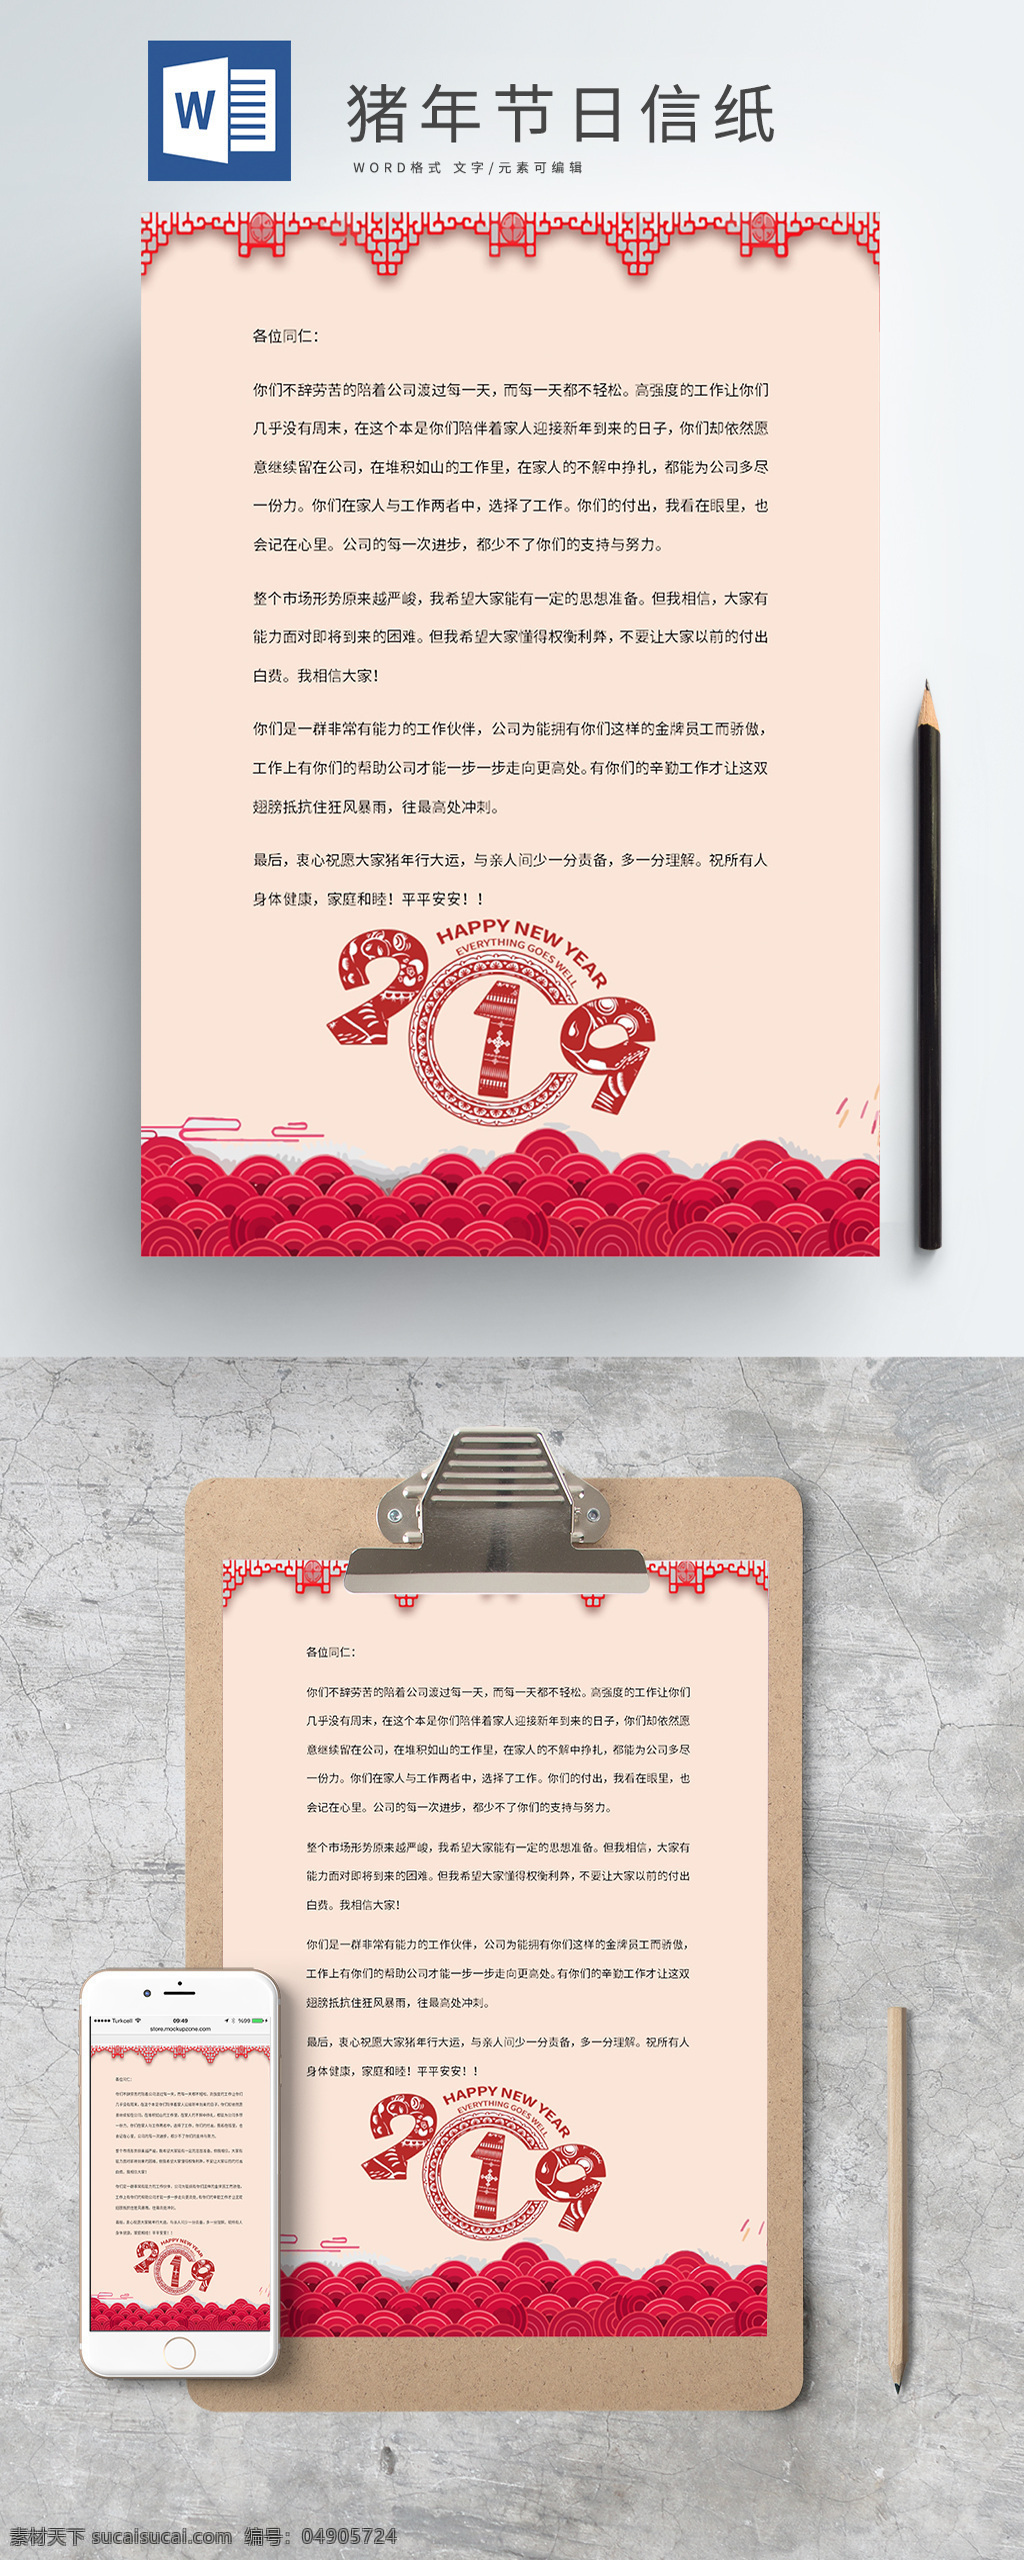 剪纸 喜庆 猪年 2019 新年 春节 信纸 红色 新年信纸 春节信纸 猪年信纸